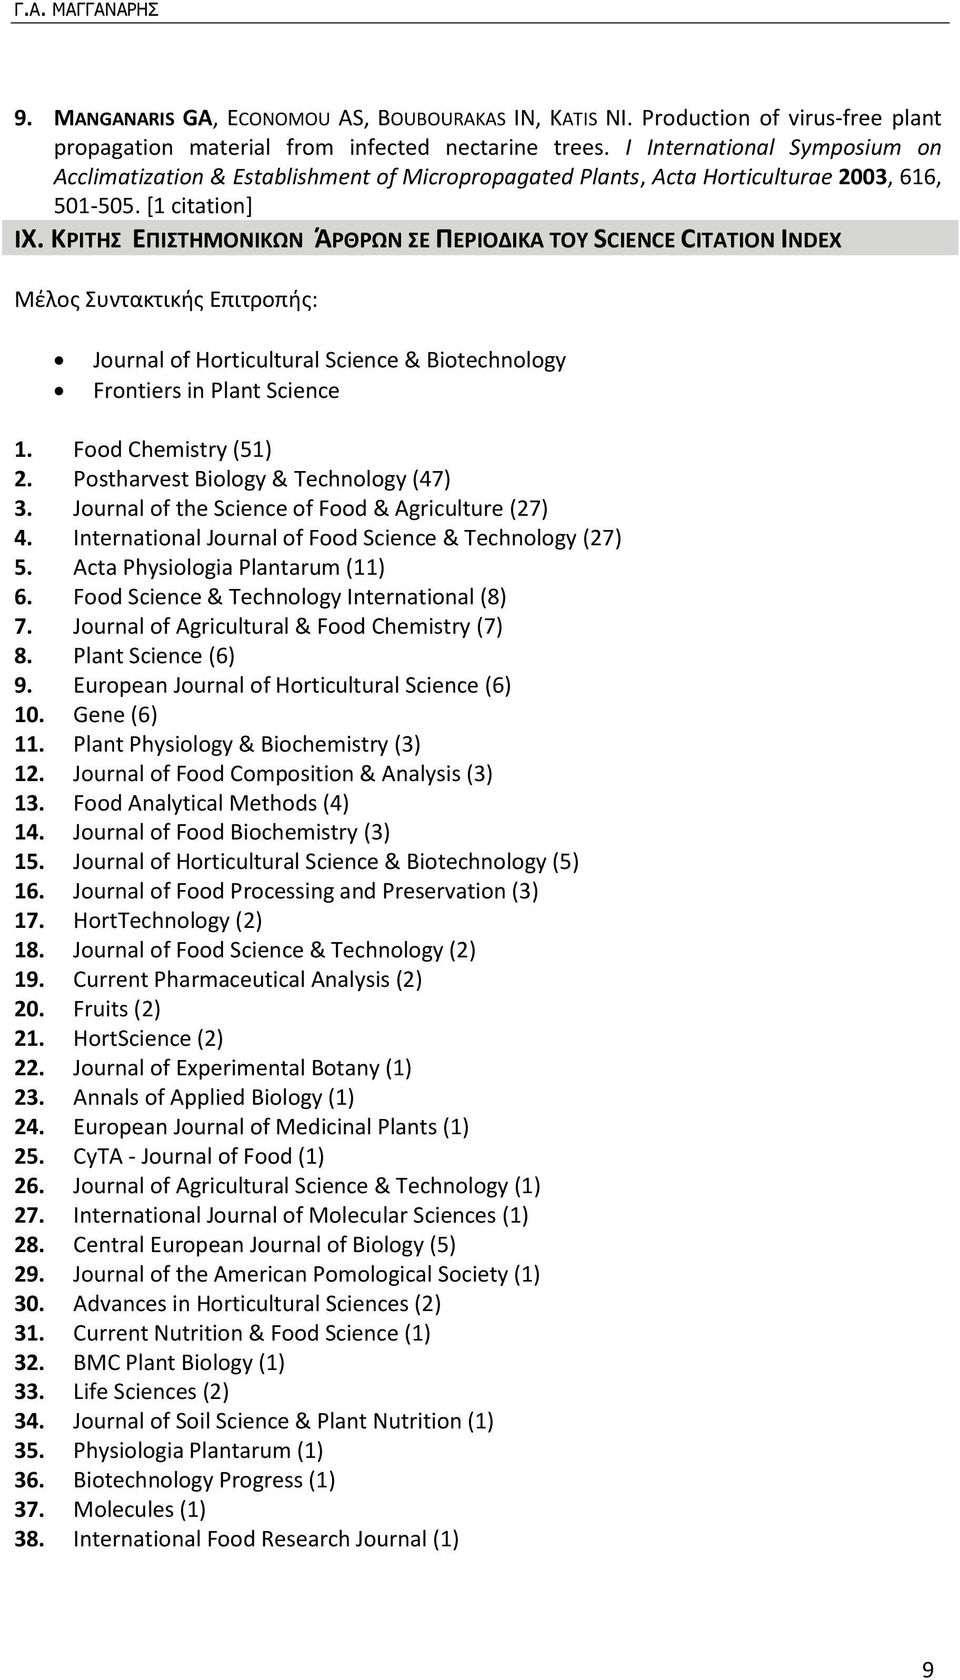 ΚΡΙΤΗΣ ΕΠΙΣΤΗΜΟΝΙΚΩΝ ΆΡΘΡΩΝ ΣΕ ΠΕΡΙΟΔΙΚΑ ΤΟΥ SCIENCE CITATION INDEX Μέλος Συντακτικής Επιτροπής: Journal of Horticultural Science & Biotechnology Frontiers in Plant Science 1. Food Chemistry (51) 2.